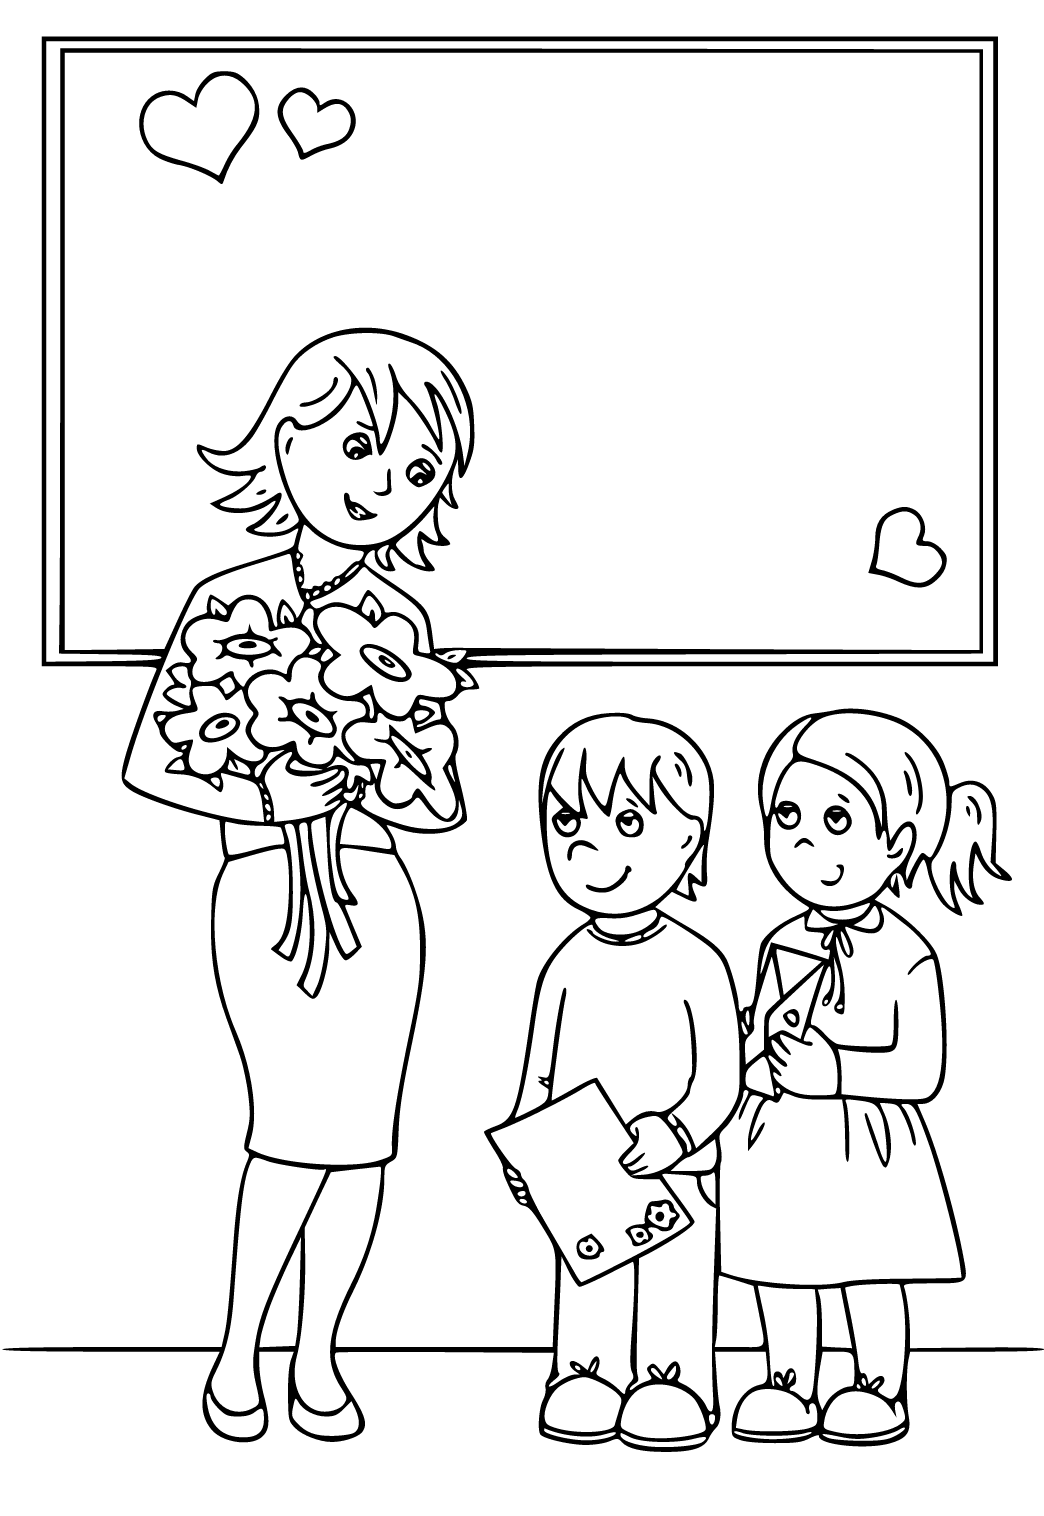 Desenhos para colorir com o tema Dia das Crianças - Professora